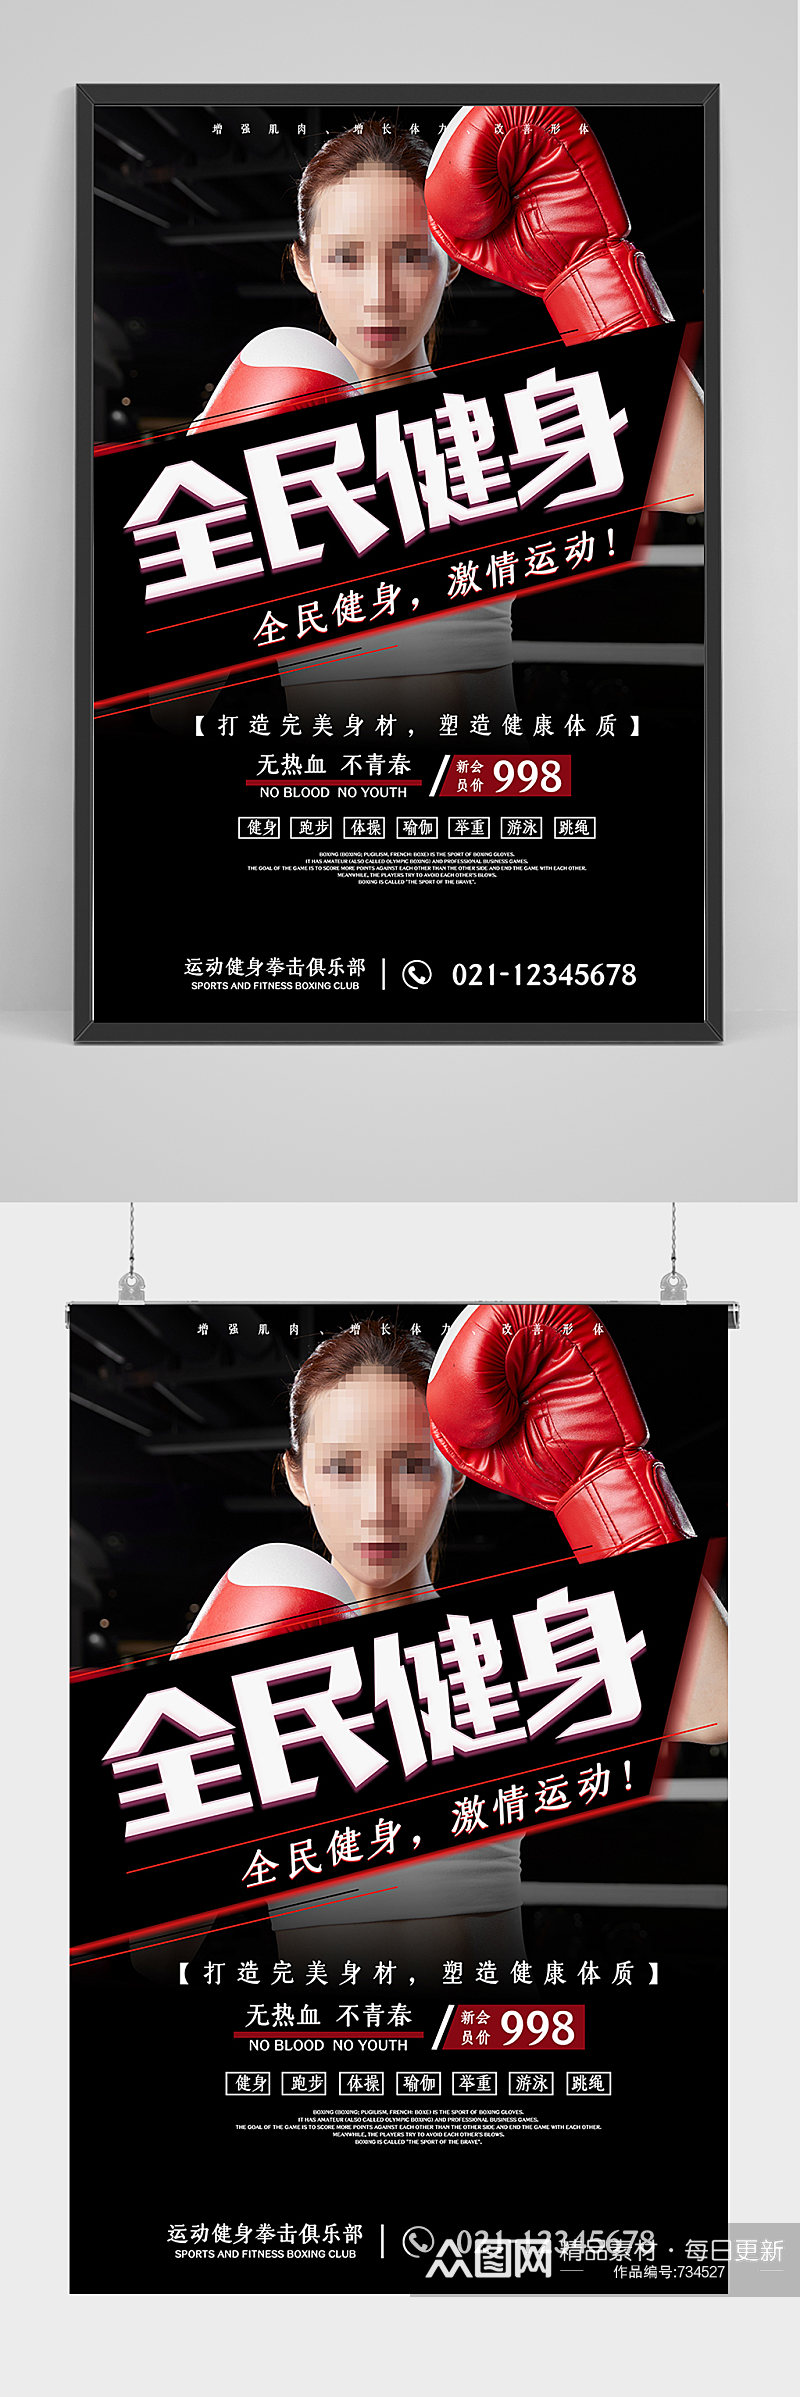 精品全名健身拳击海报设计素材